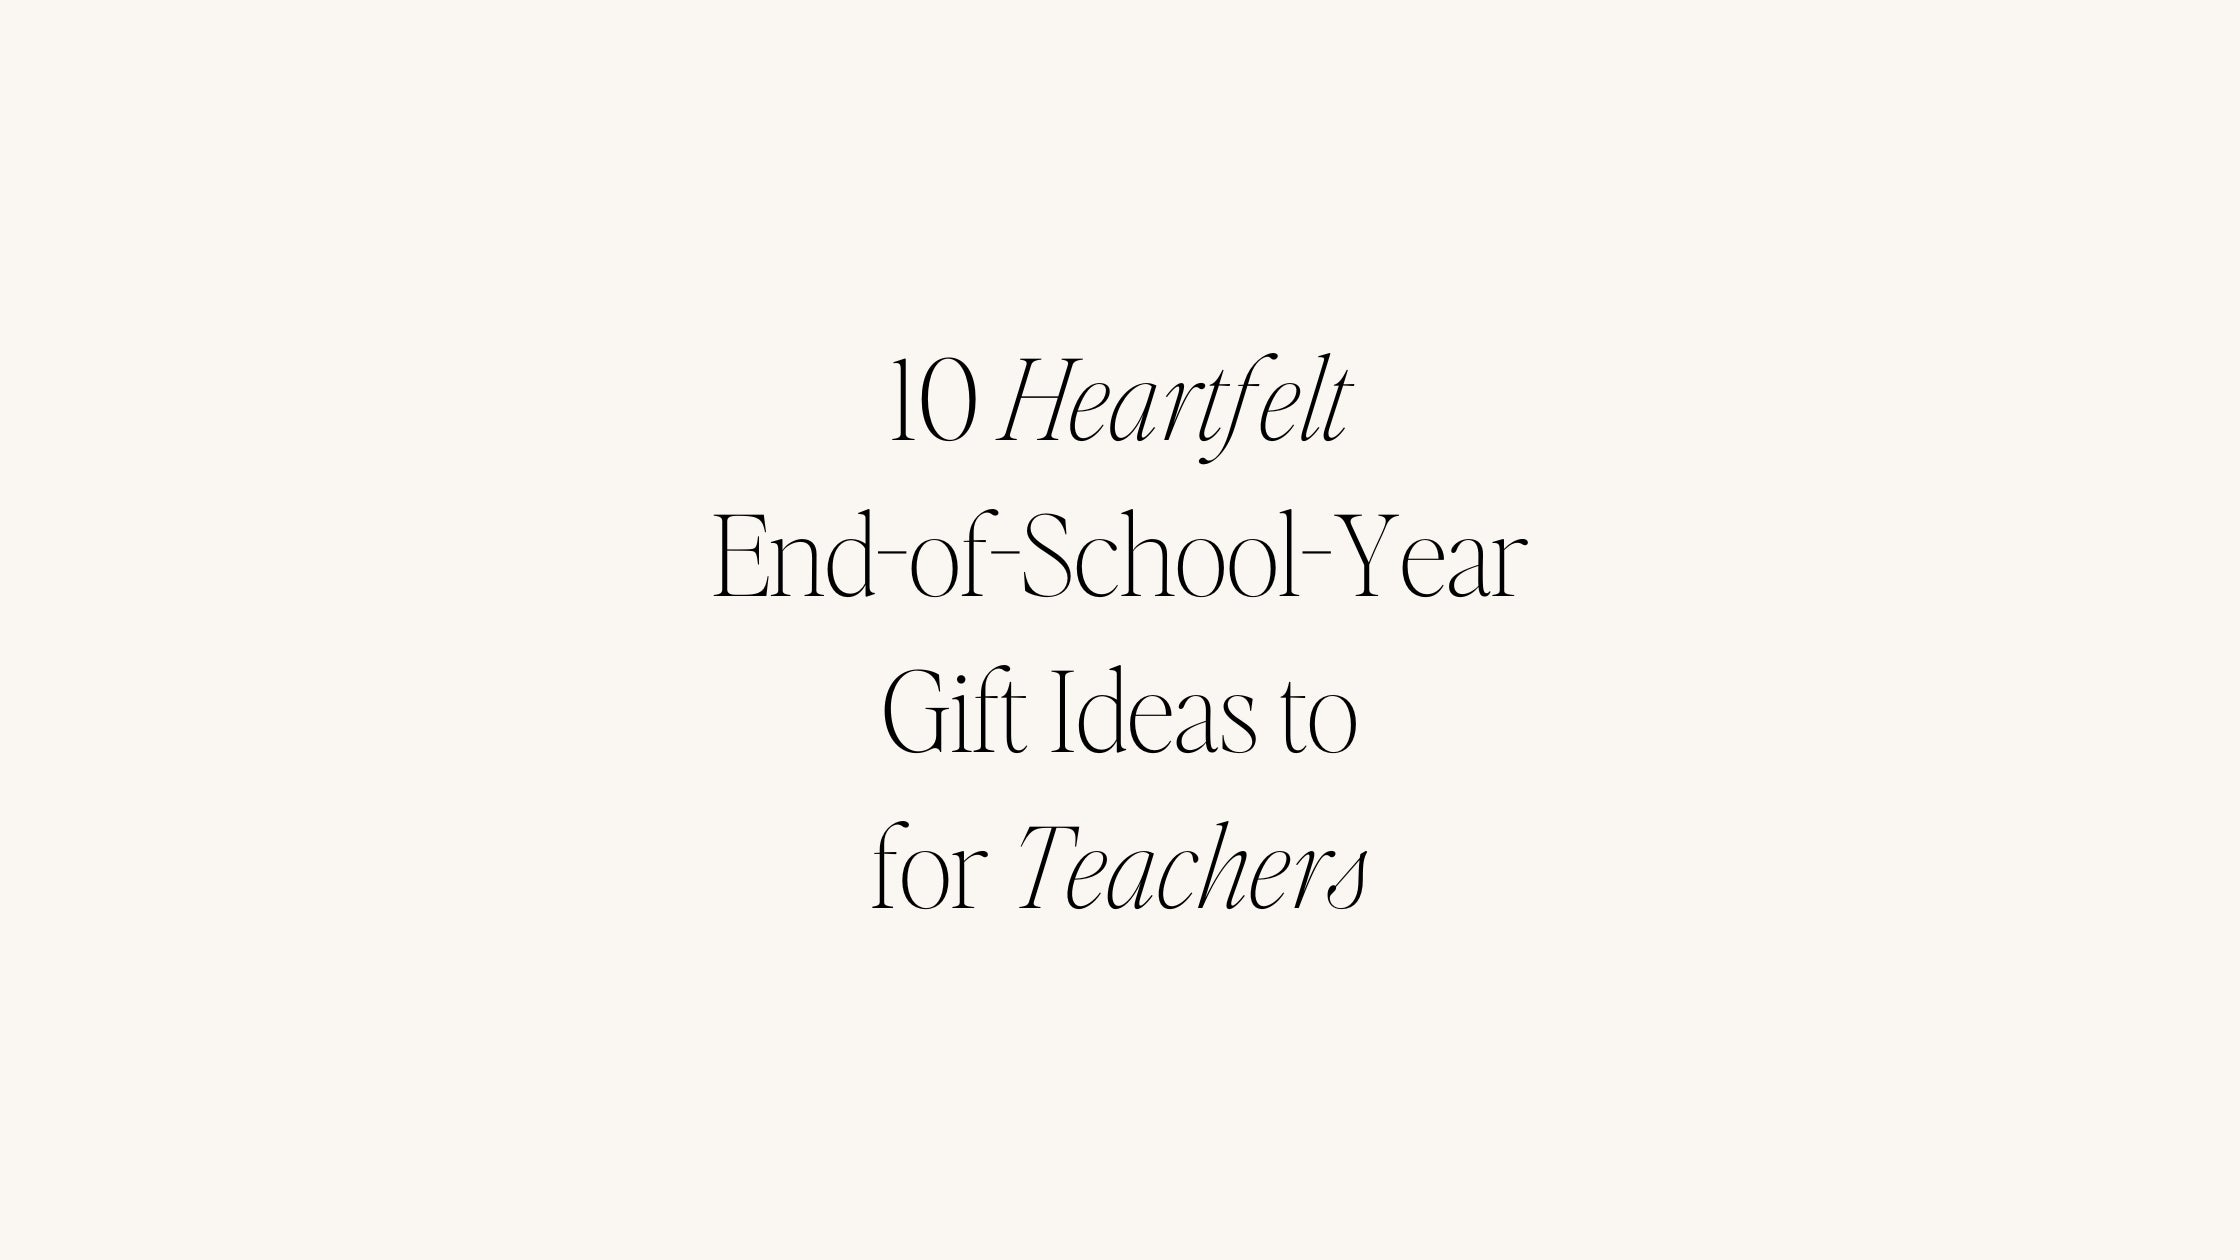 10 Heartfelt End-of-School-Year Gift Ideas to Appreciate Your Teachers